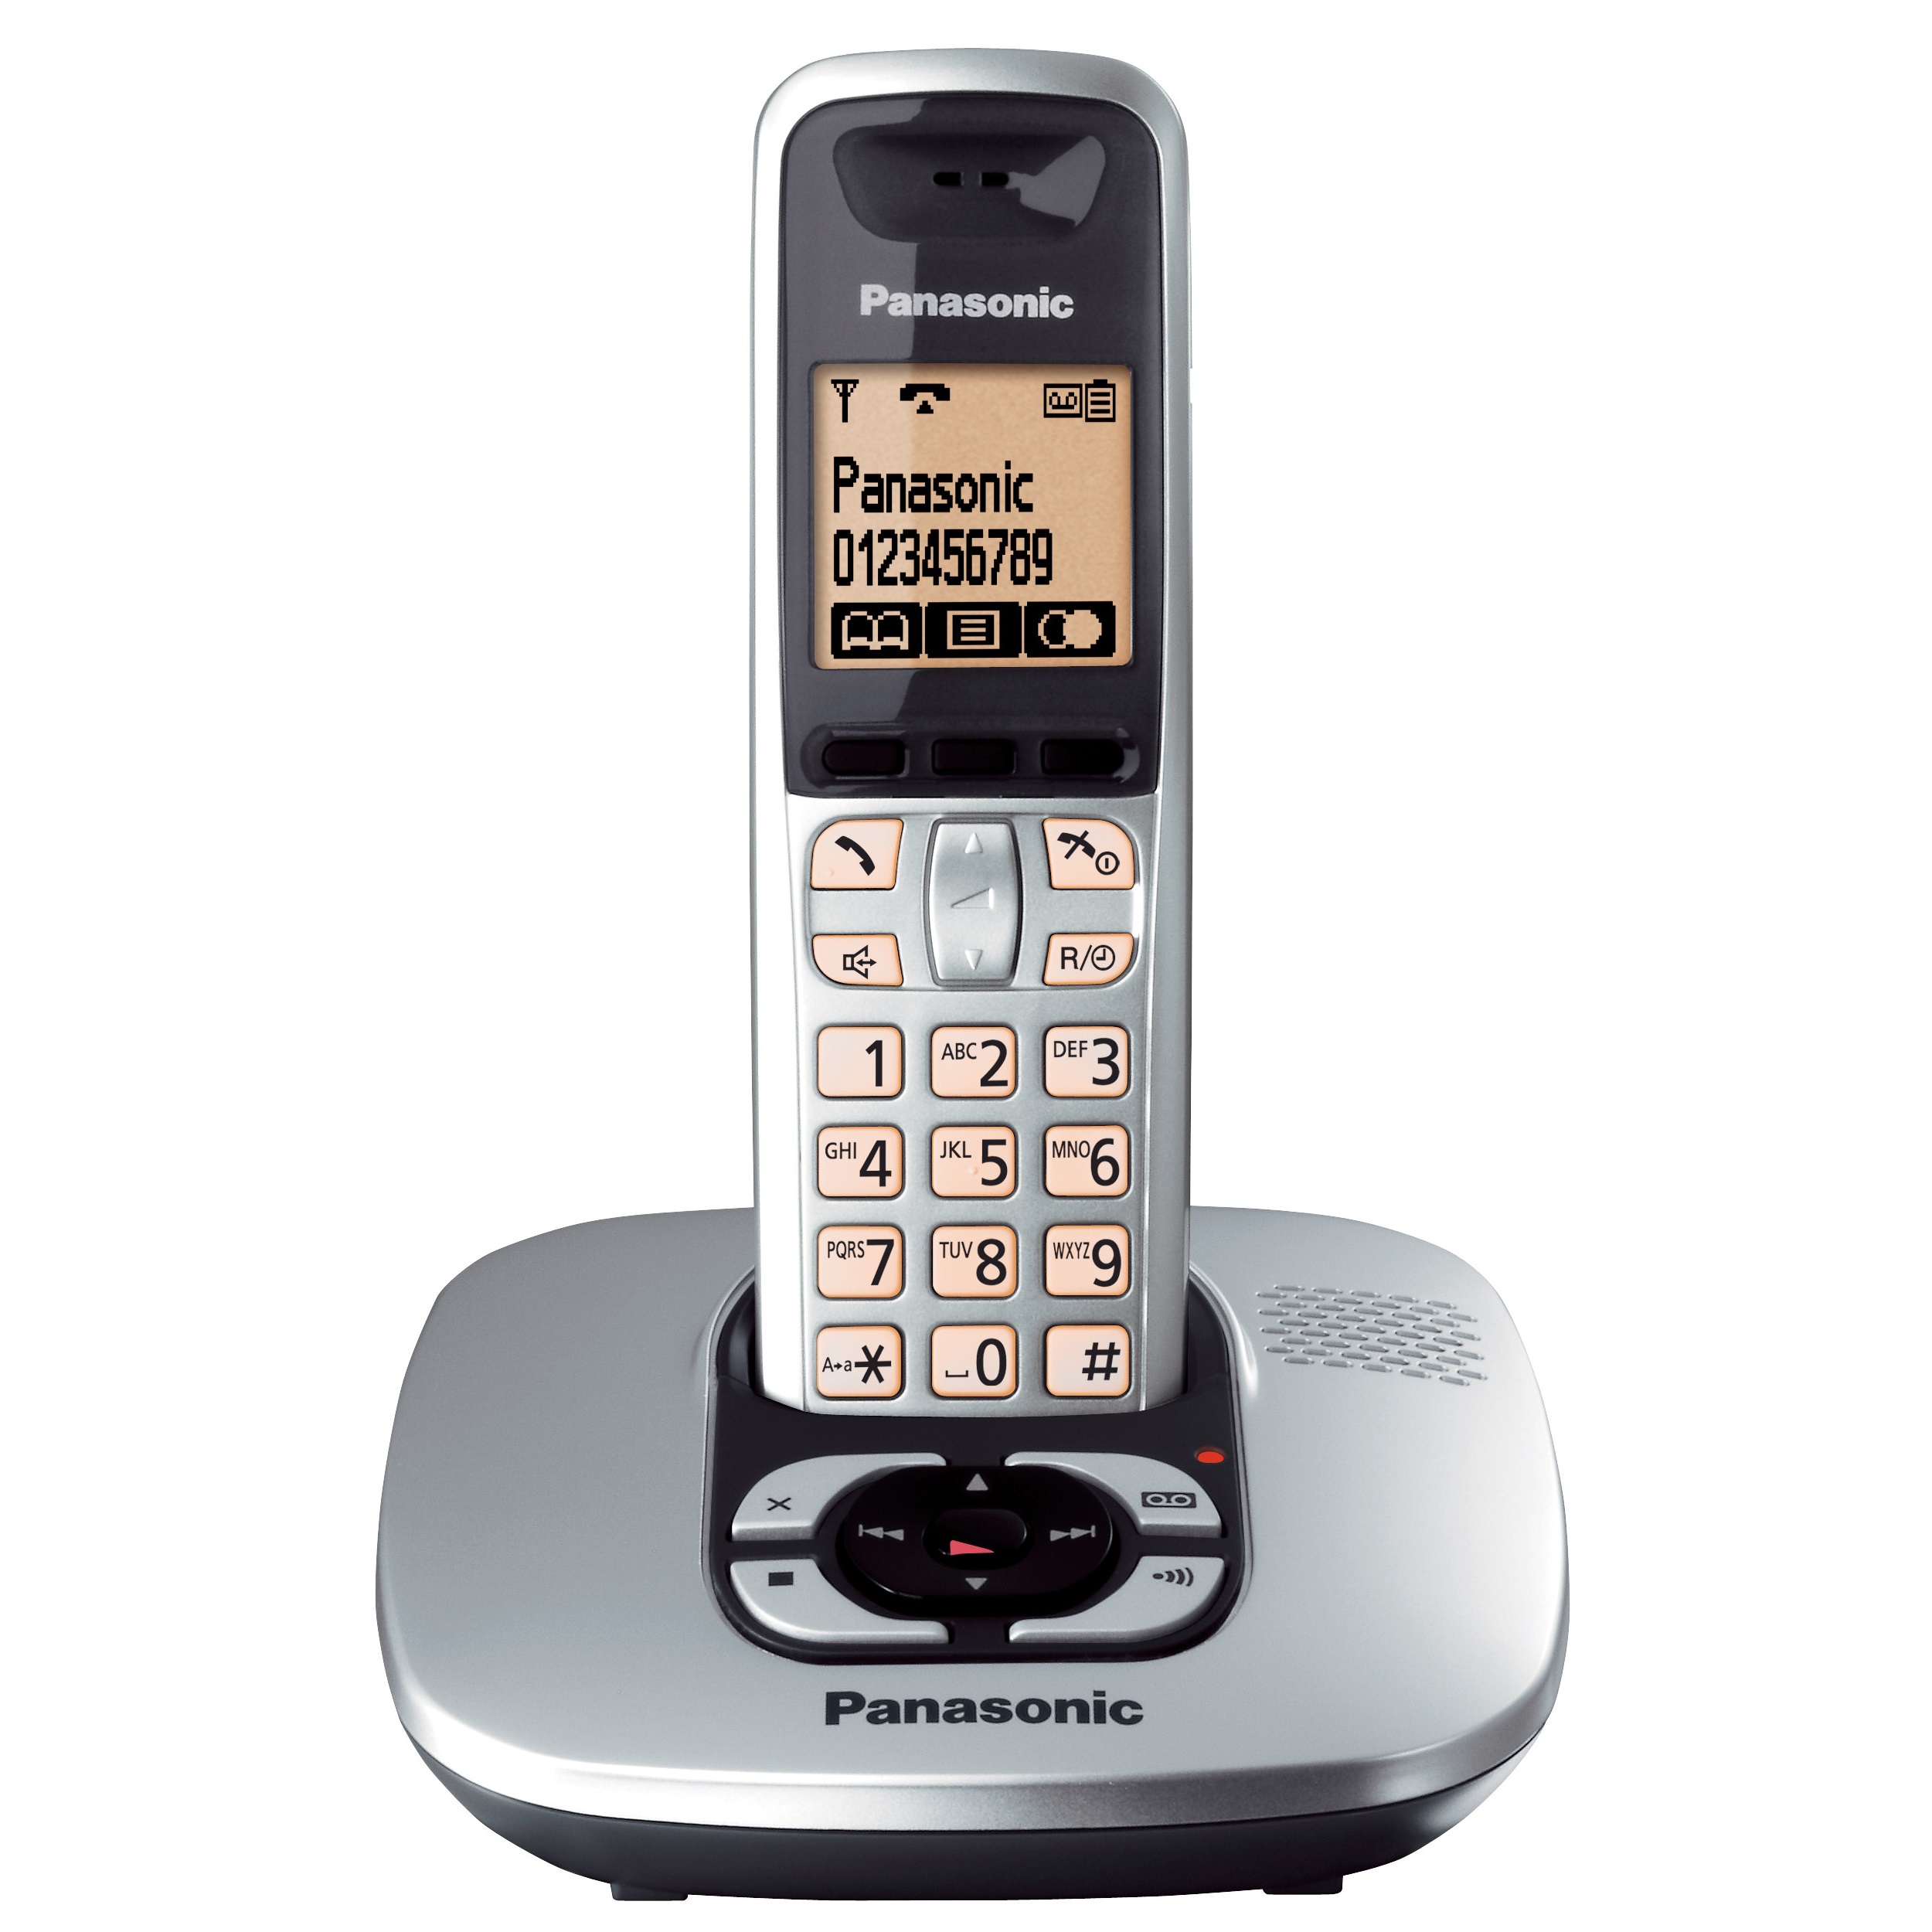 فروش نقدی و اقساطی تلفن پاناسونیک مدل KX-TG6421